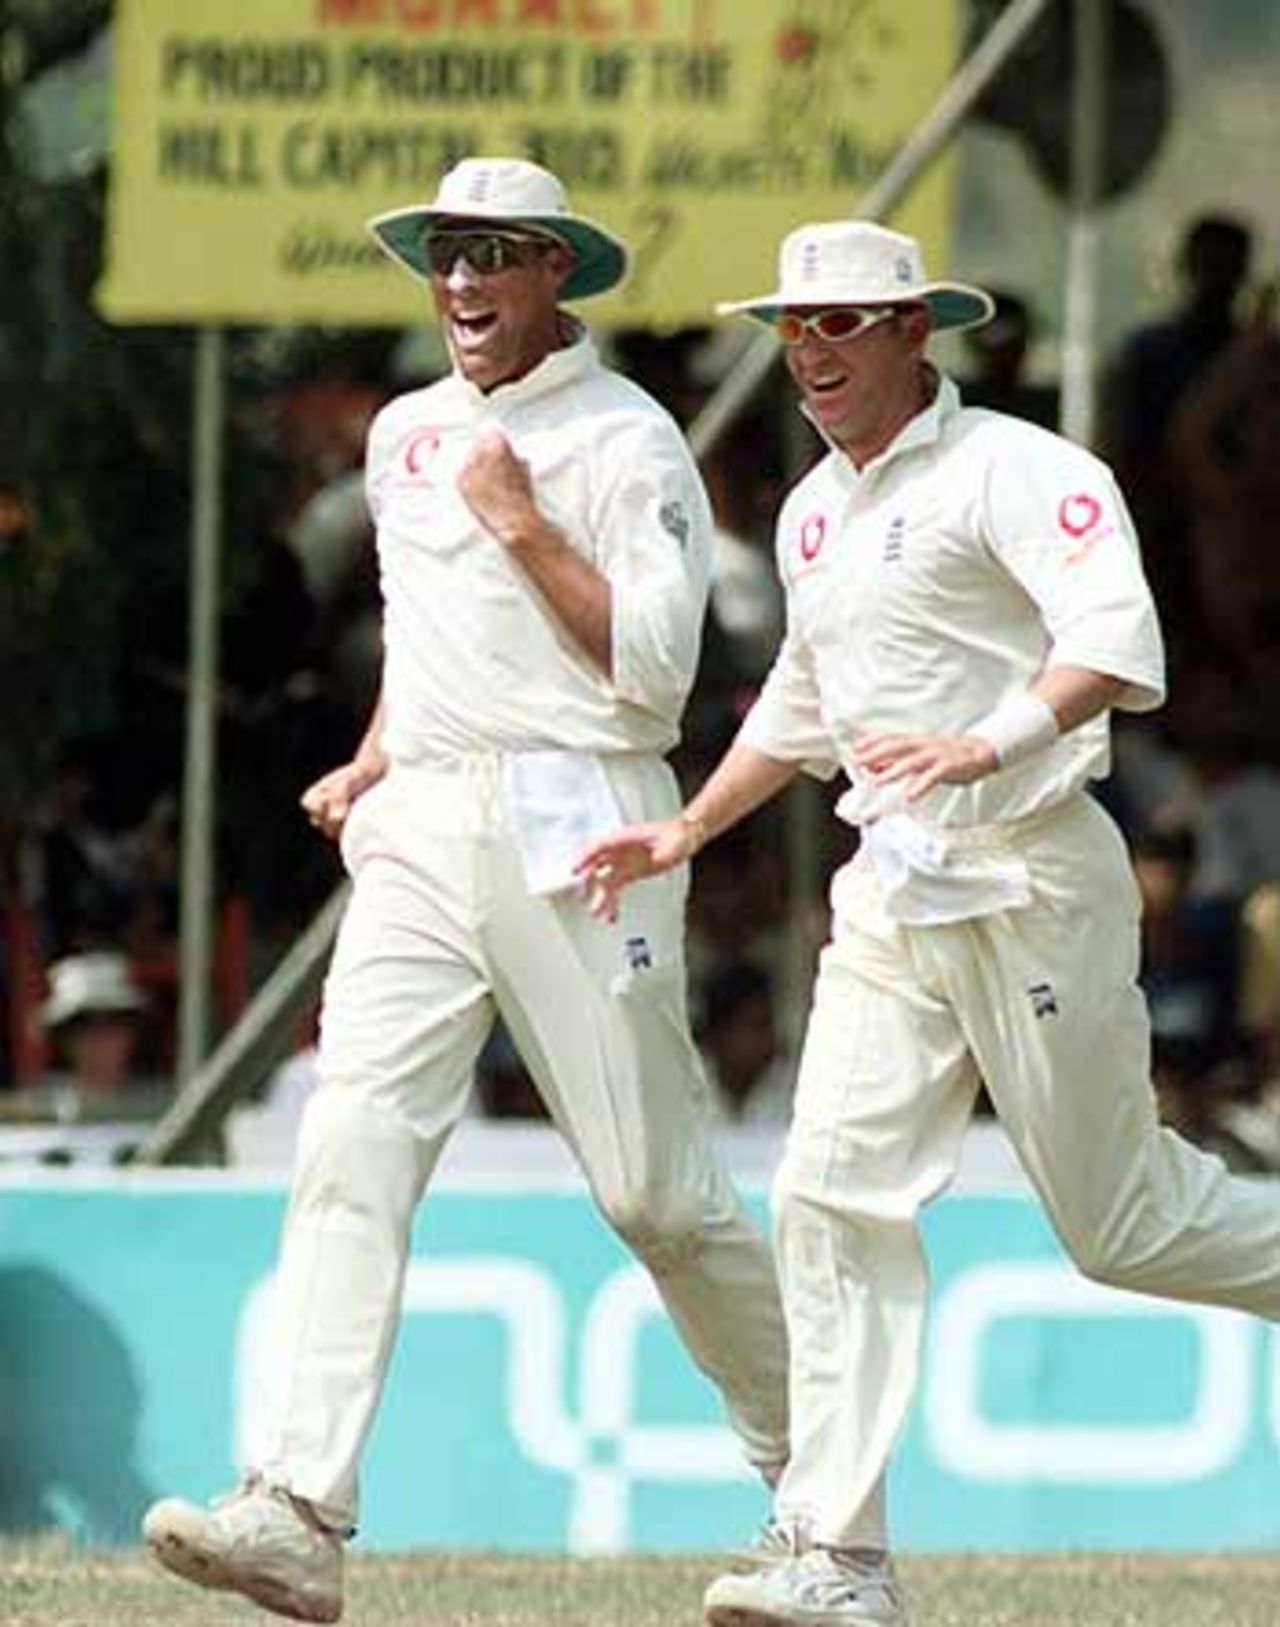 Sri Lanka v England, 2nd Test match at Kandy, 7-11 March 2001